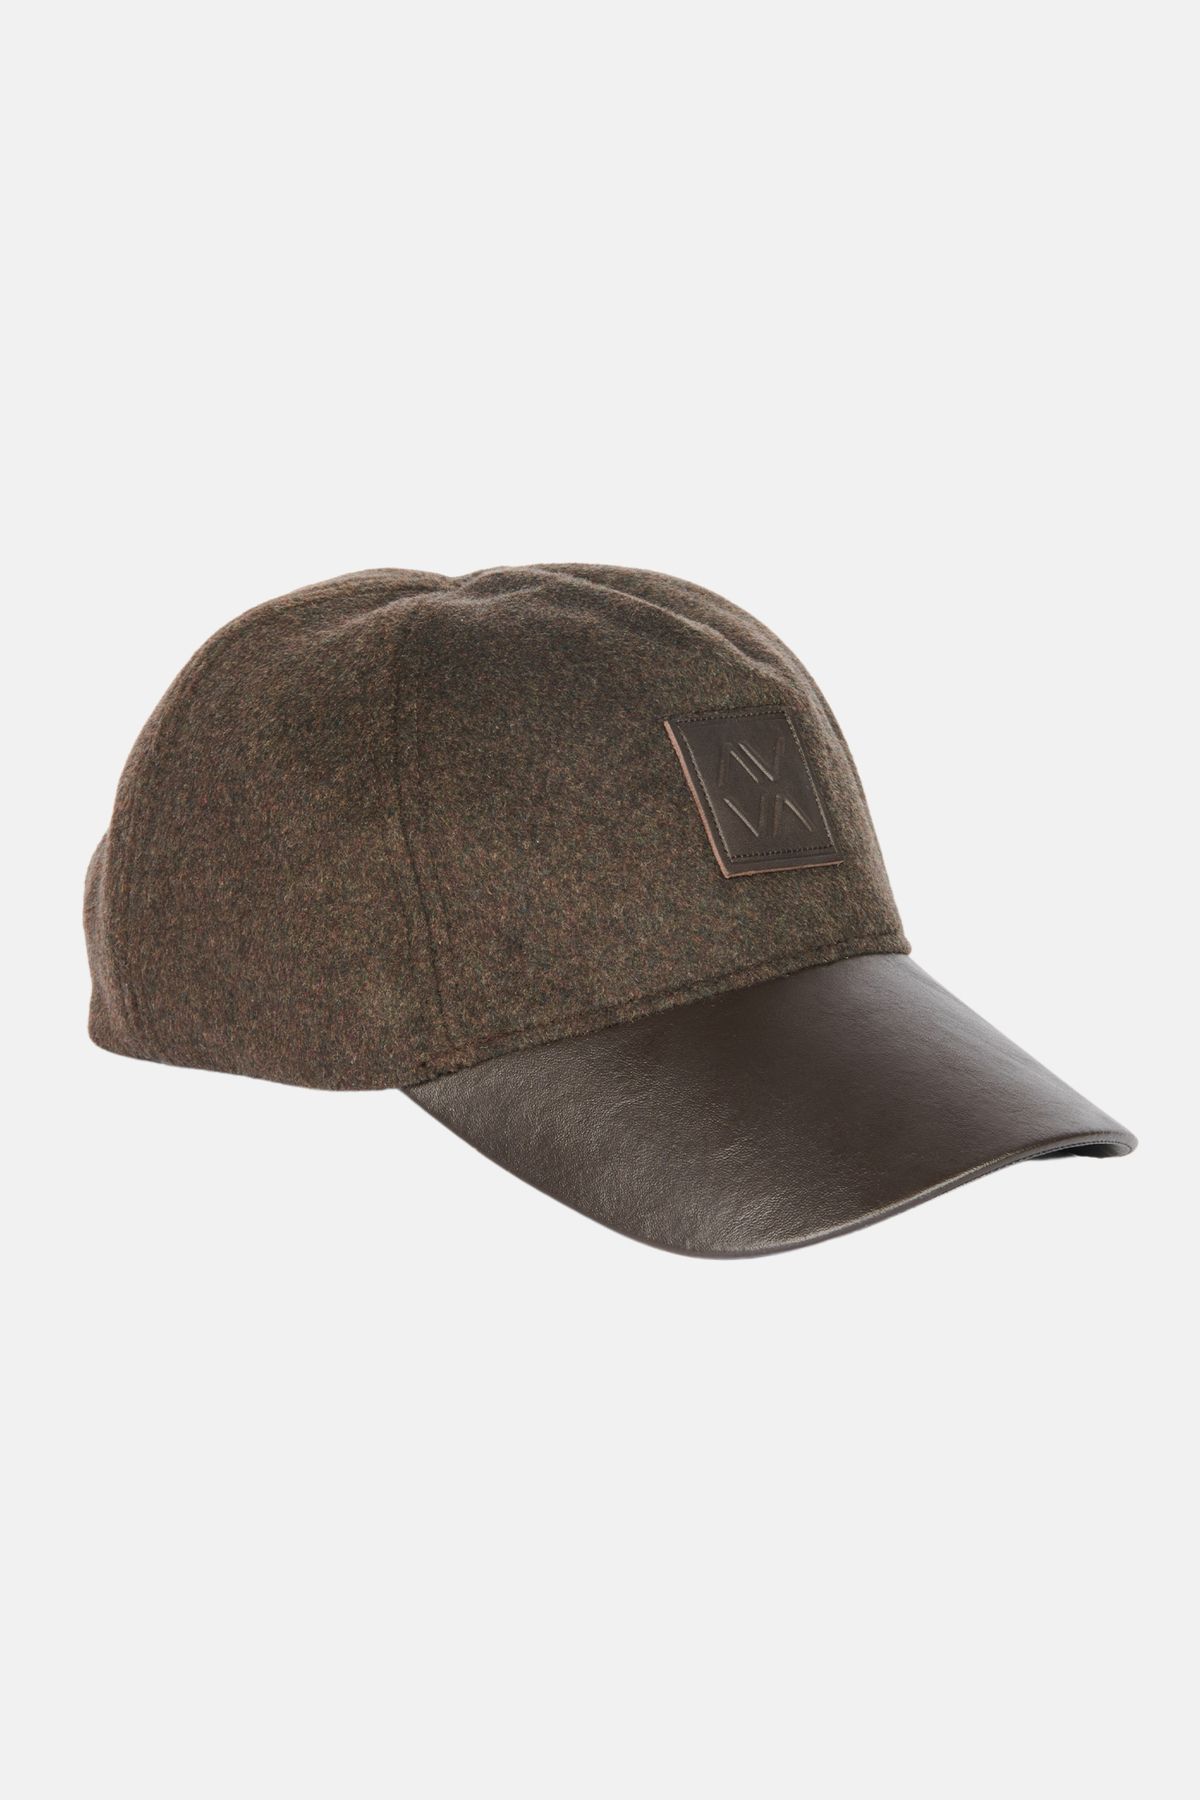 Avva Erkek Kahverengi Deri Görünümlü Siperlikli Kaşe Şapka A32y9209